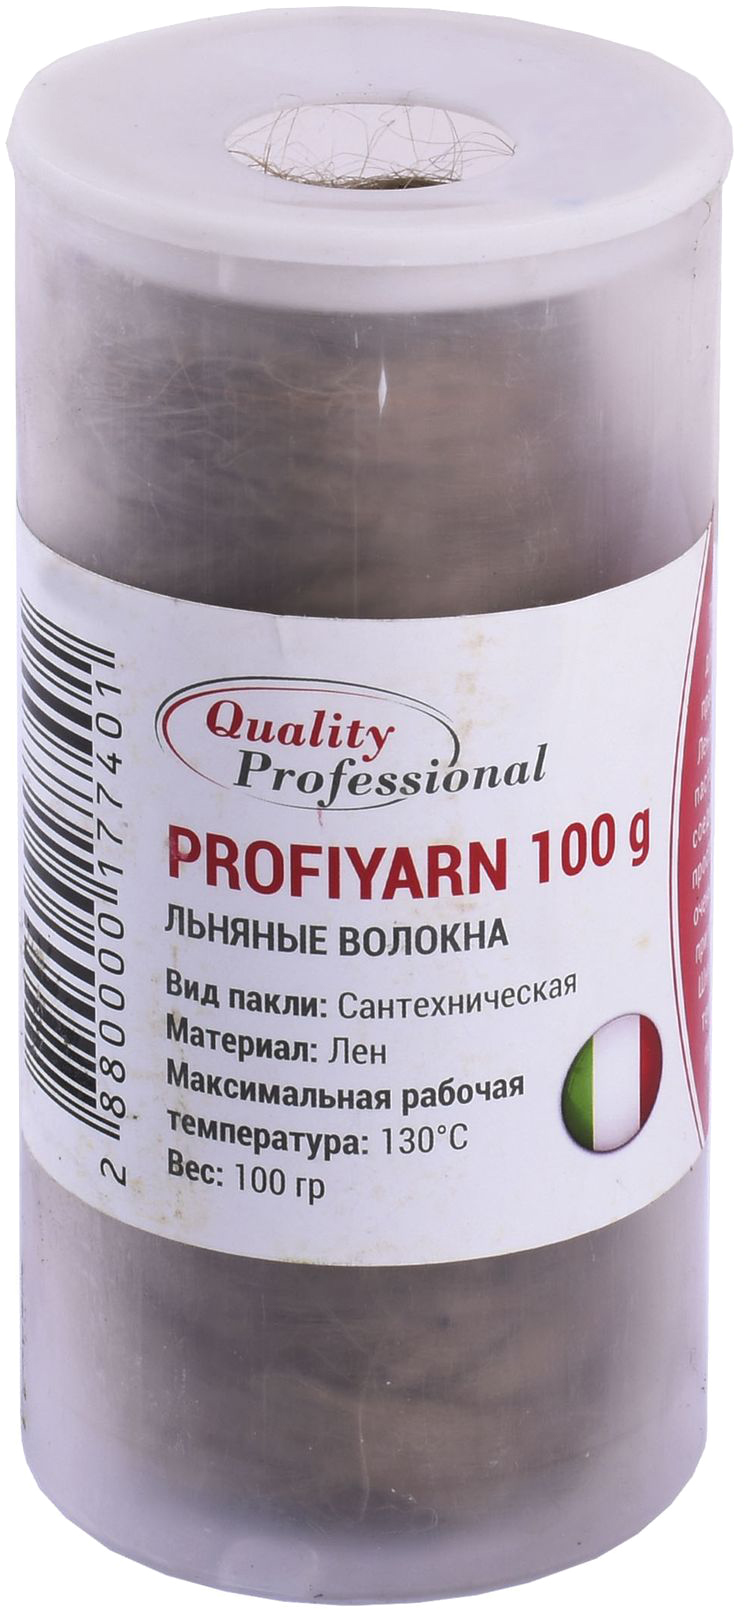 Цена пакля Quality Professional Profigarn S-1266 (100 g) в тубусе в Херсоне